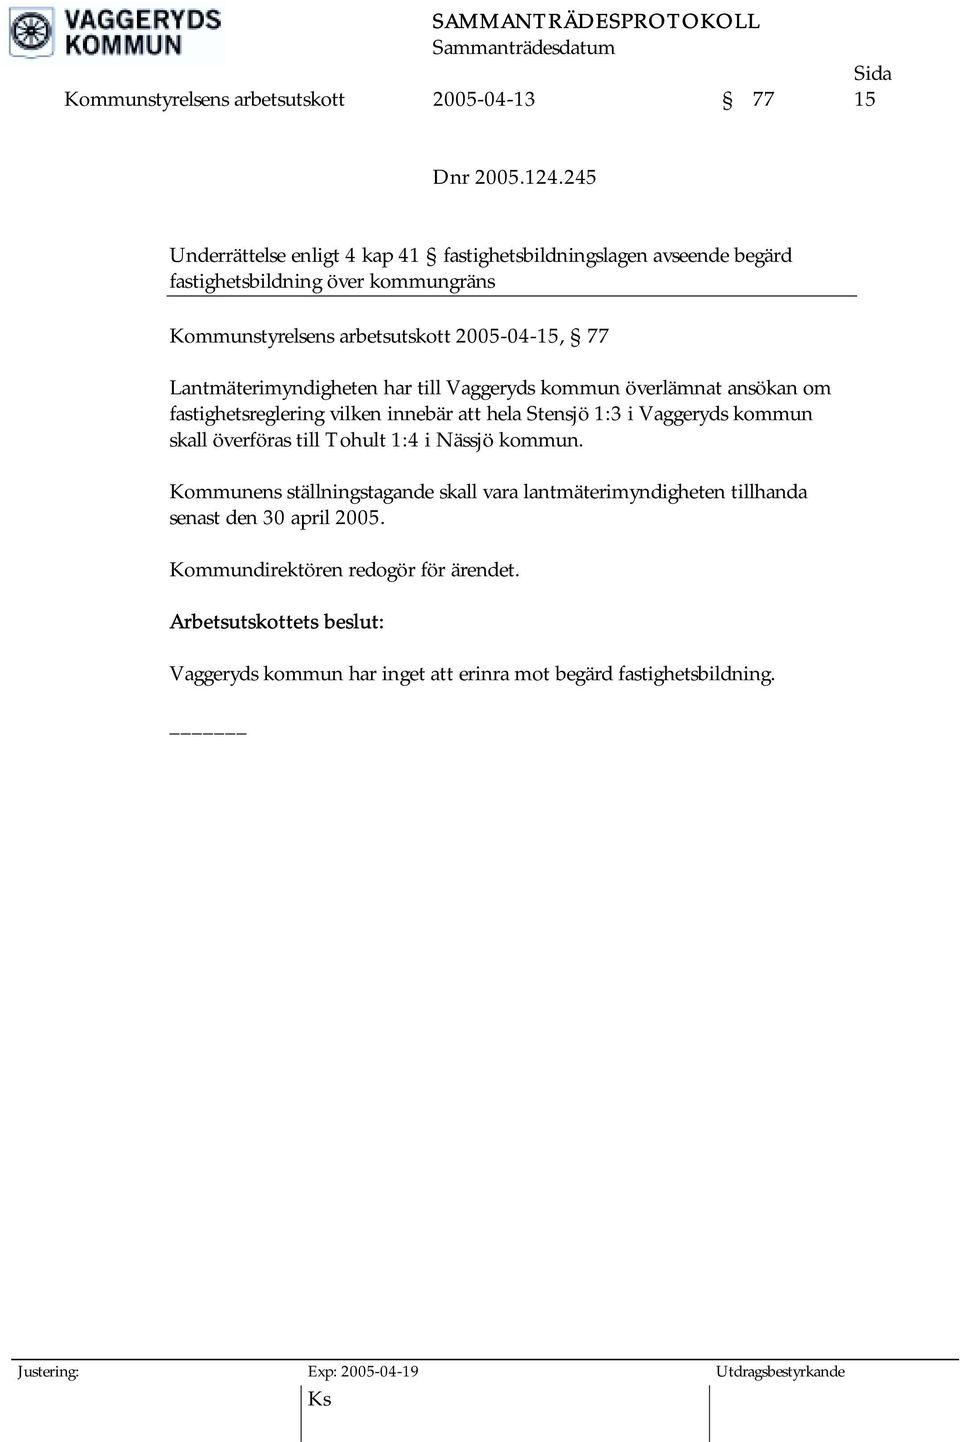 2005-04-15, 77 Lantmäterimyndigheten har till Vaggeryds kommun överlämnat ansökan om fastighetsreglering vilken innebär att hela Stensjö 1:3 i